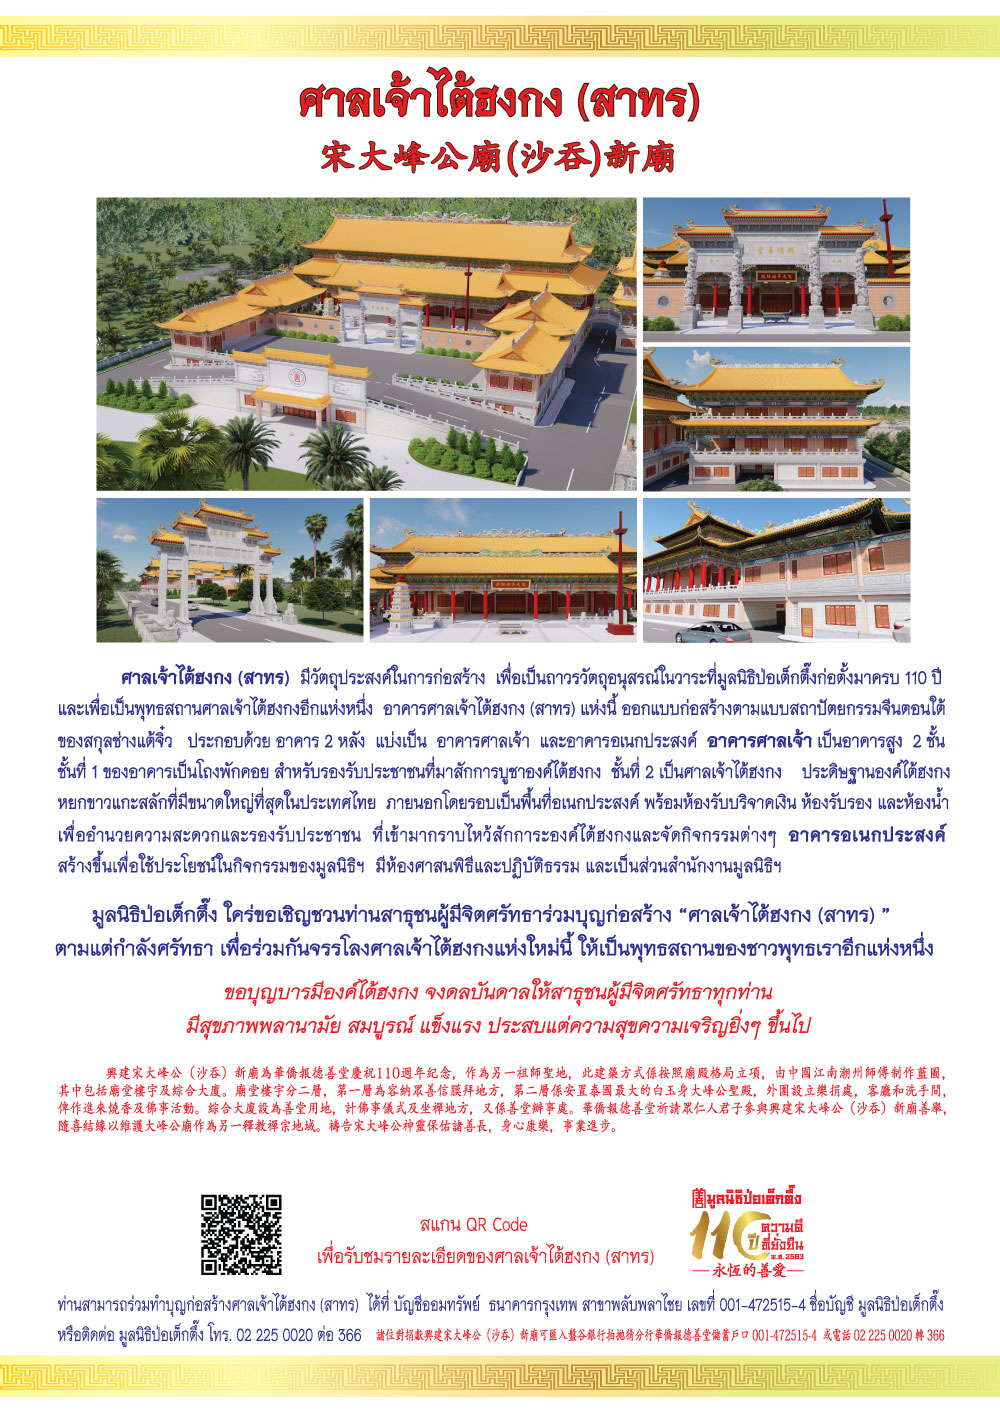 ข่าวศาสนา - มูลนิธิป่อเต็กตึ๊ง ขอเชิญชวนผู้มีจิตศรัทธาร่วมบุญก่อสร้าง ศาลเจ้าไต้ฮงกง (สาทร) ประดิษฐานองค์ไต้ฮงกงหยกขาวที่มีขนาดใหญ่ที่สุดในประเทศไทย  พร้อมเป็นแลนด์มาร์กใหม่ของมูลนิธิฯ ด้านกิจกรรมทางศาสนาและกิจ